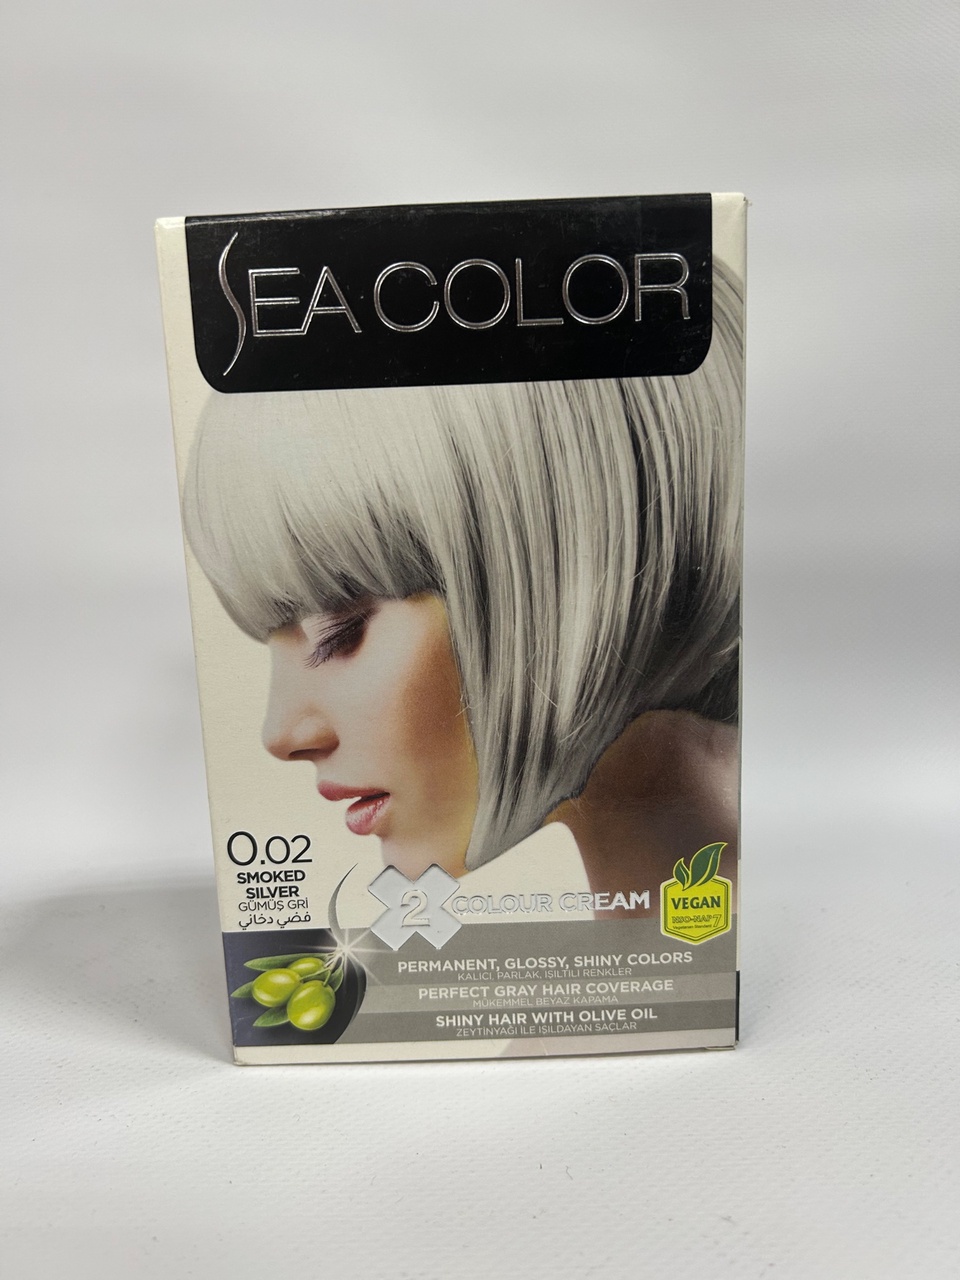 Sea Color 0.02 Краска д/волос «Серебристо-пепельный» - 300 ₽, заказать онлайн.